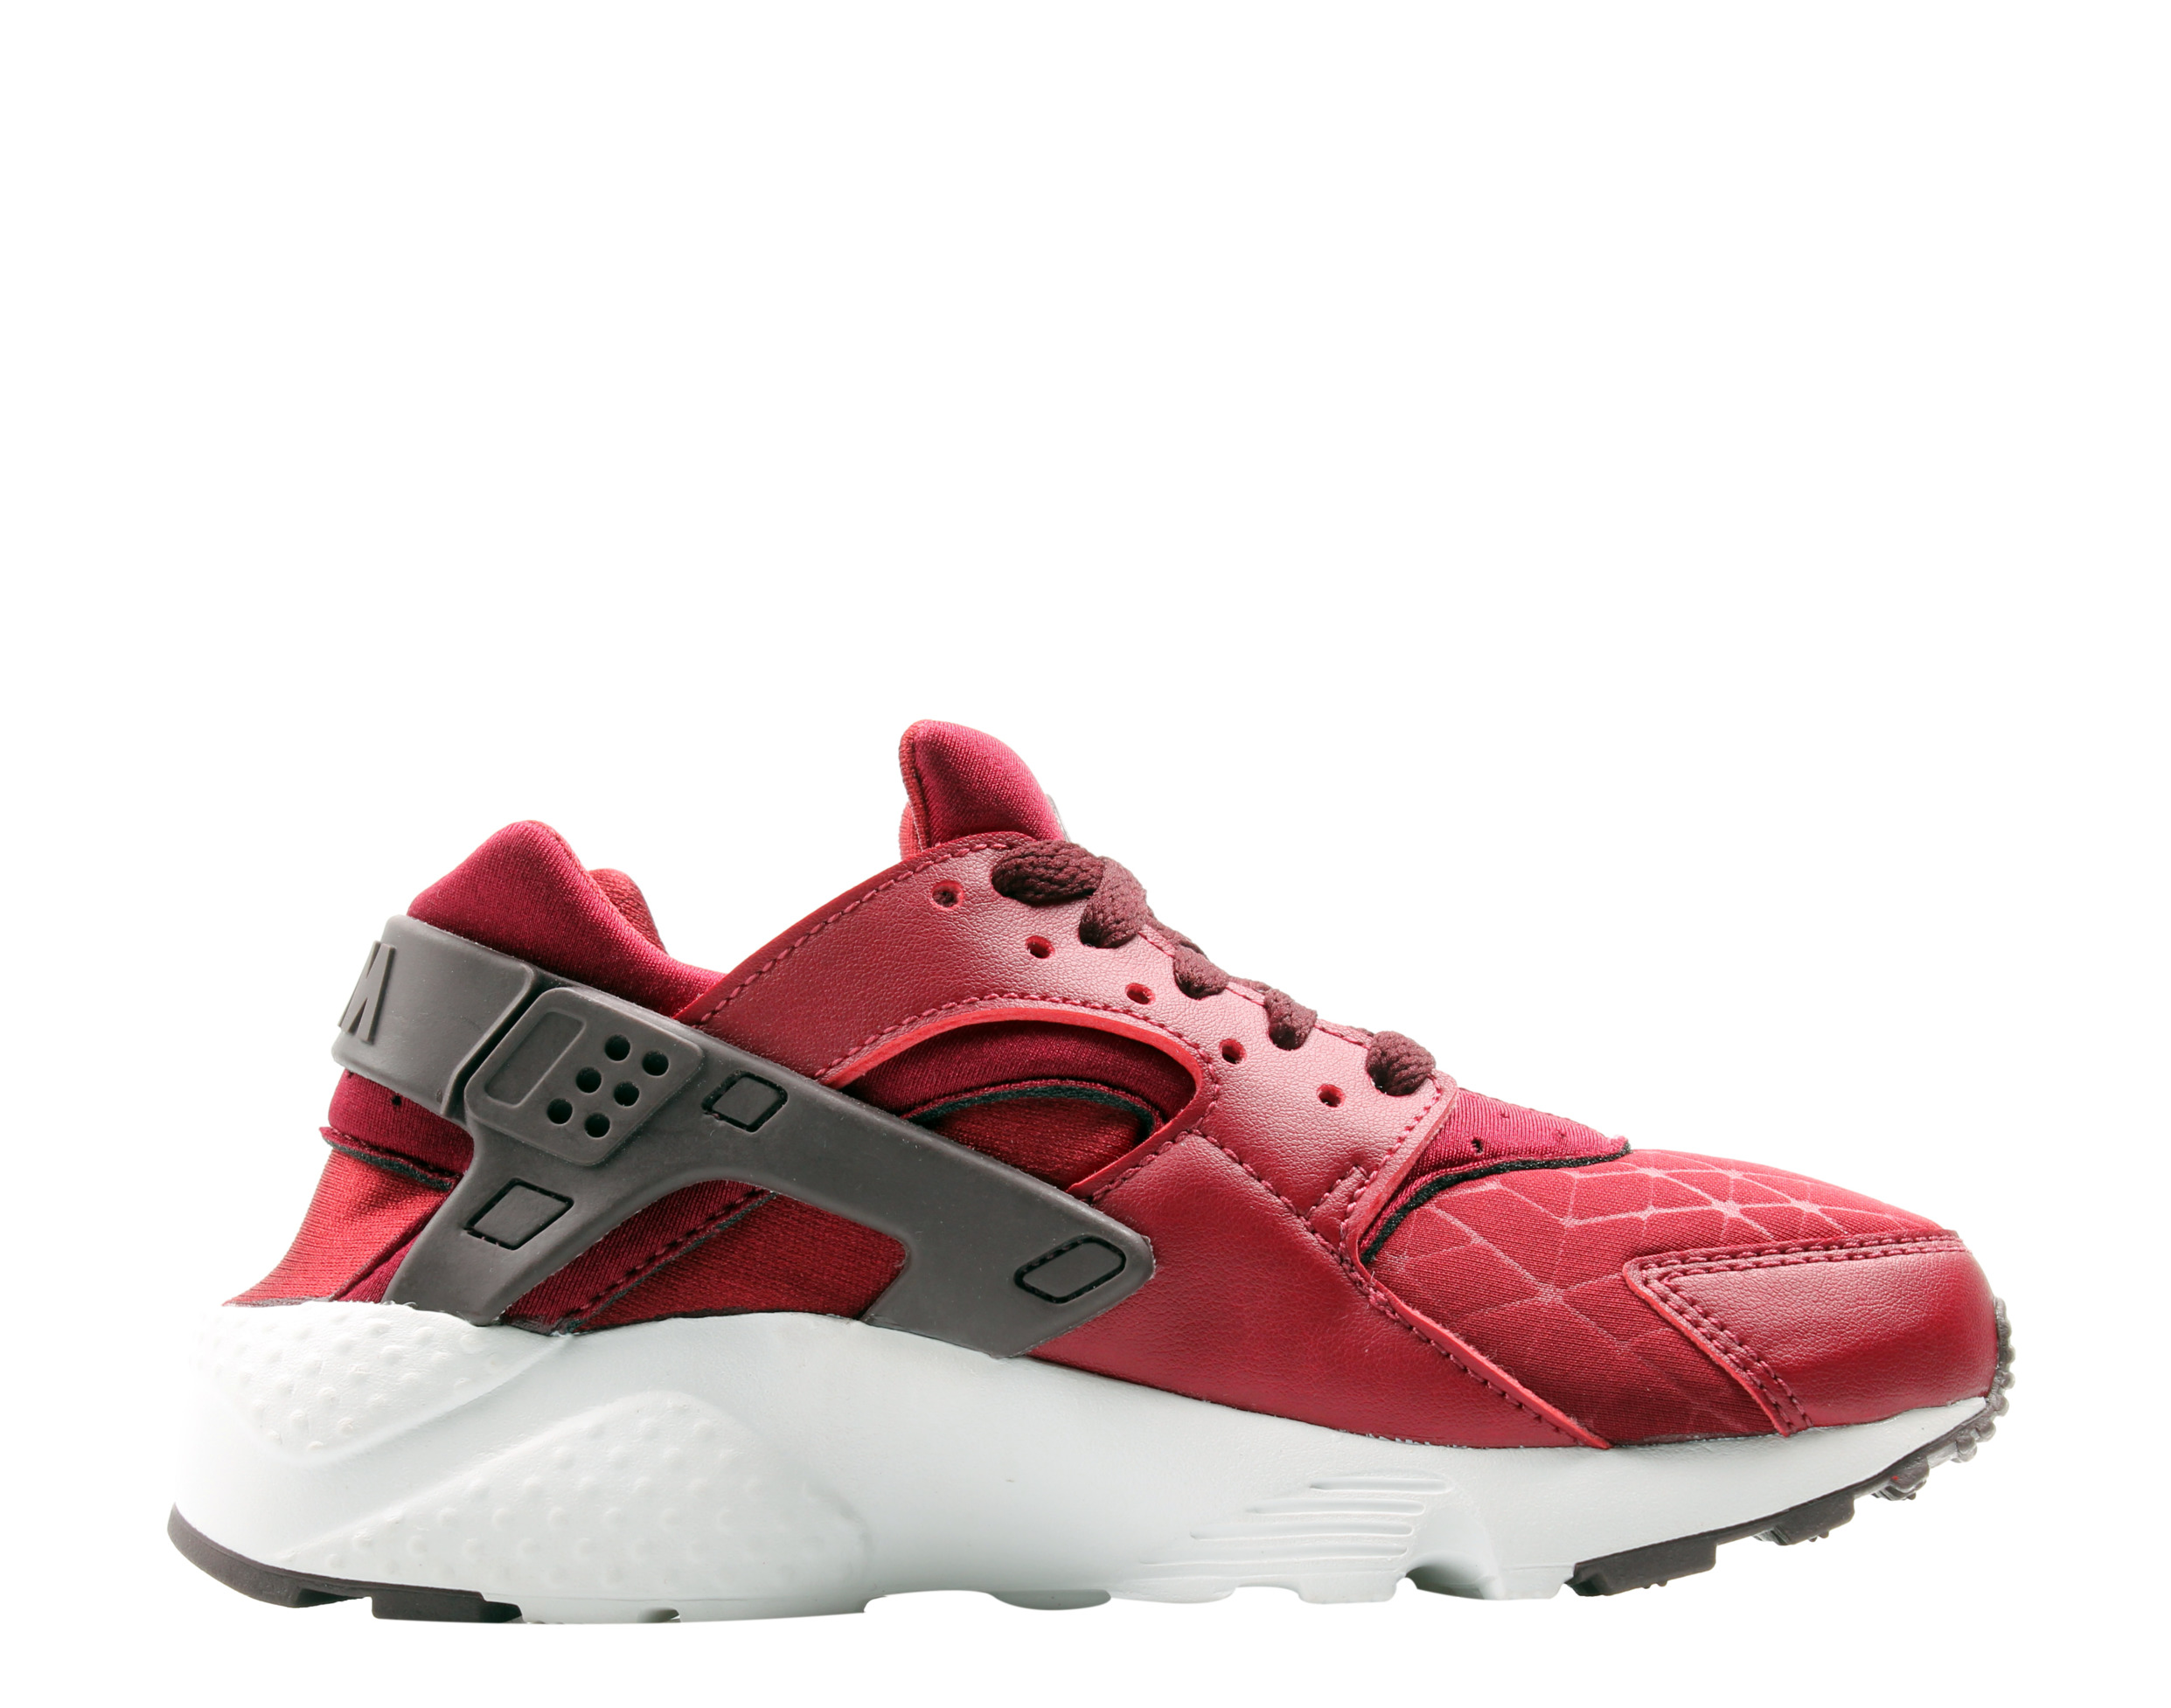 Nike Huarache Run TU (GS) Team Red/Burgundy Big Kids Running Shoes AV3228-600 - image 2 of 6